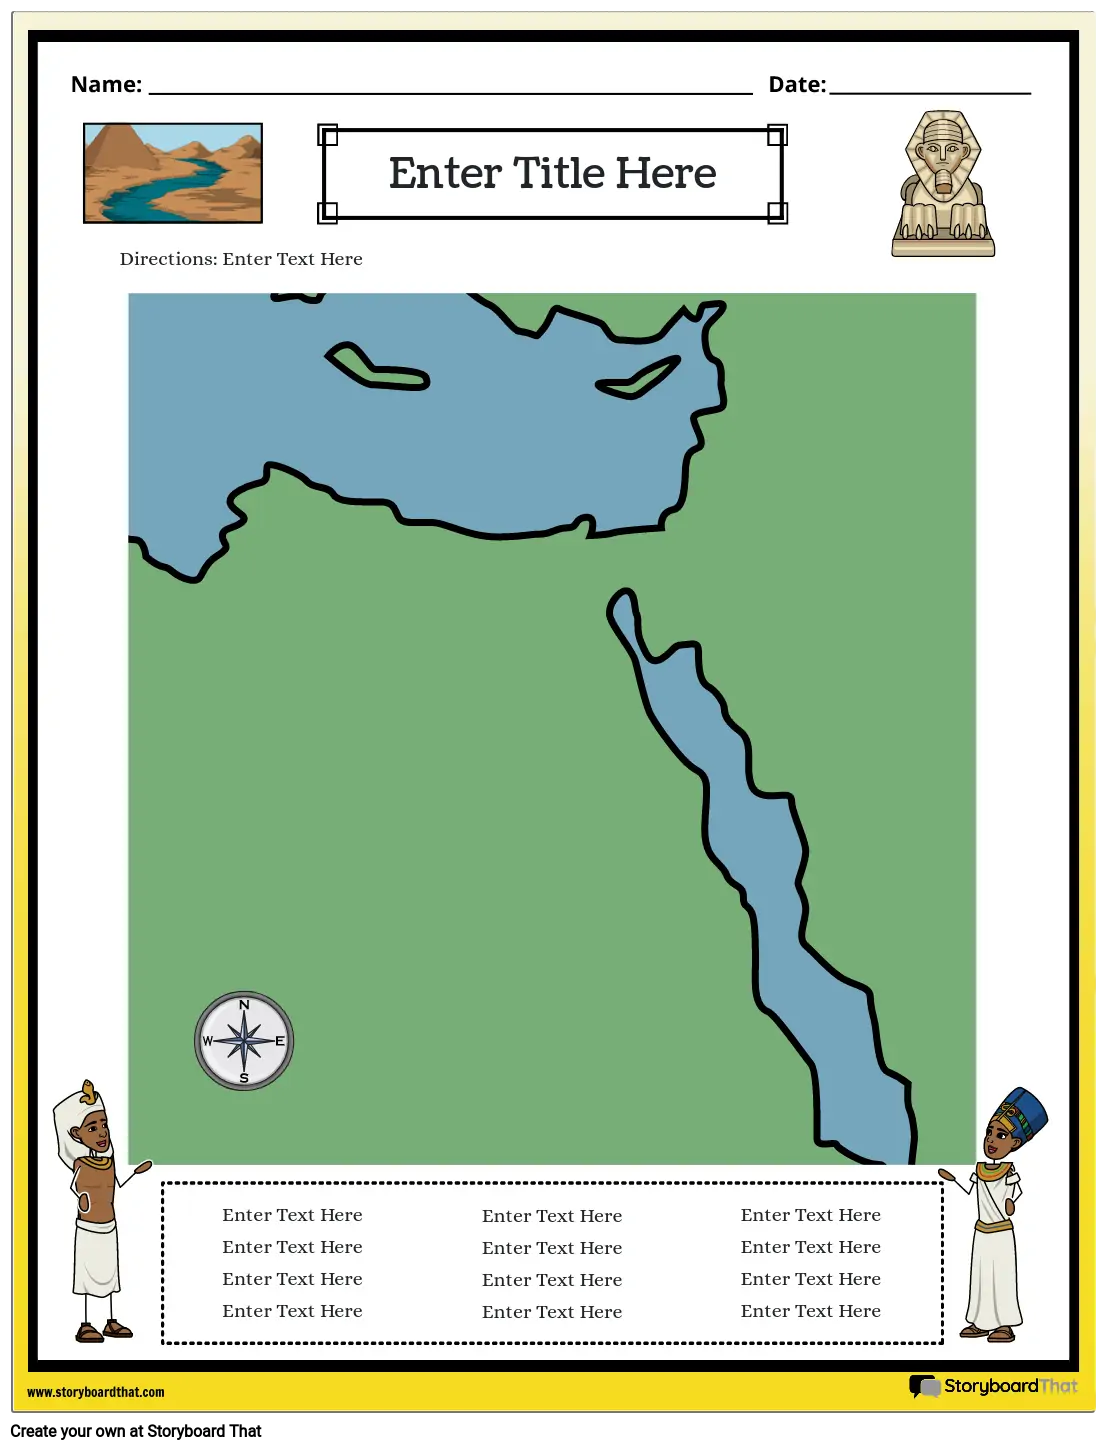 Mapa do Egito Antigo